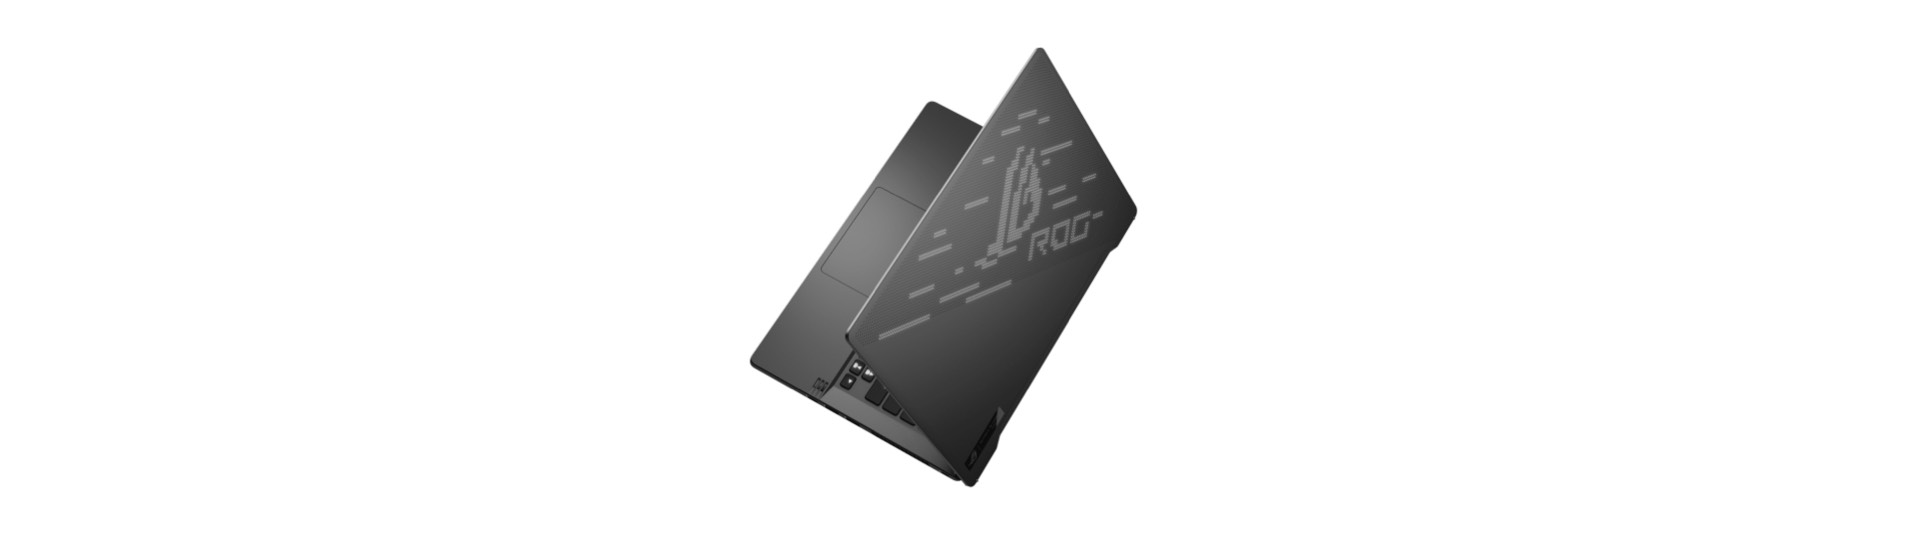 [CES 2020] ROG Zephyrus G14 là laptop có mặt lưng hiển thị ảnh động!